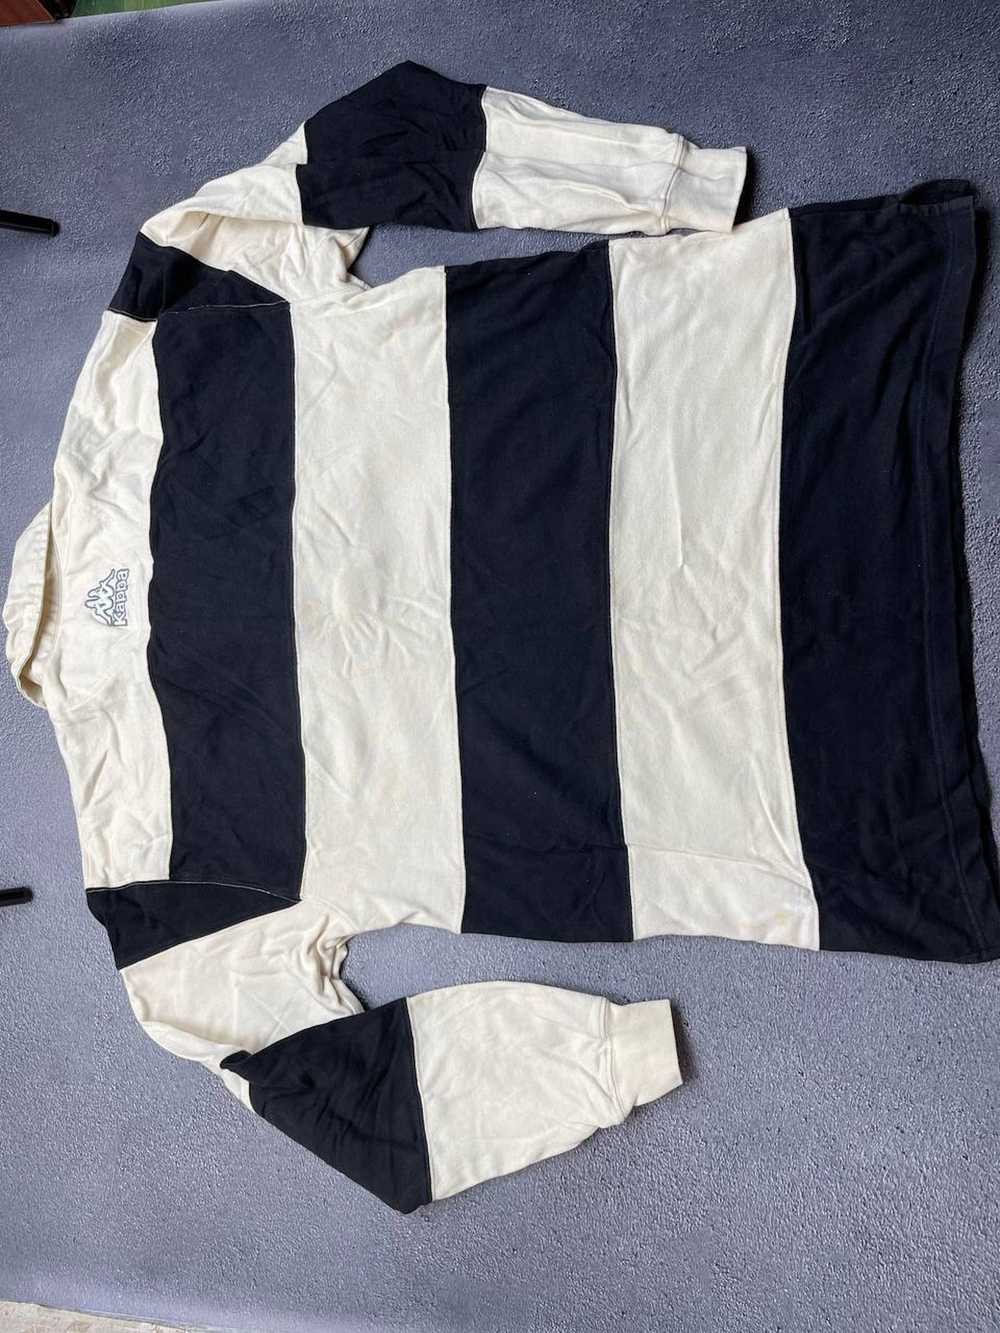 BLOKE × Kappa × Soccer Jersey Vintage Kappa Juven… - image 6